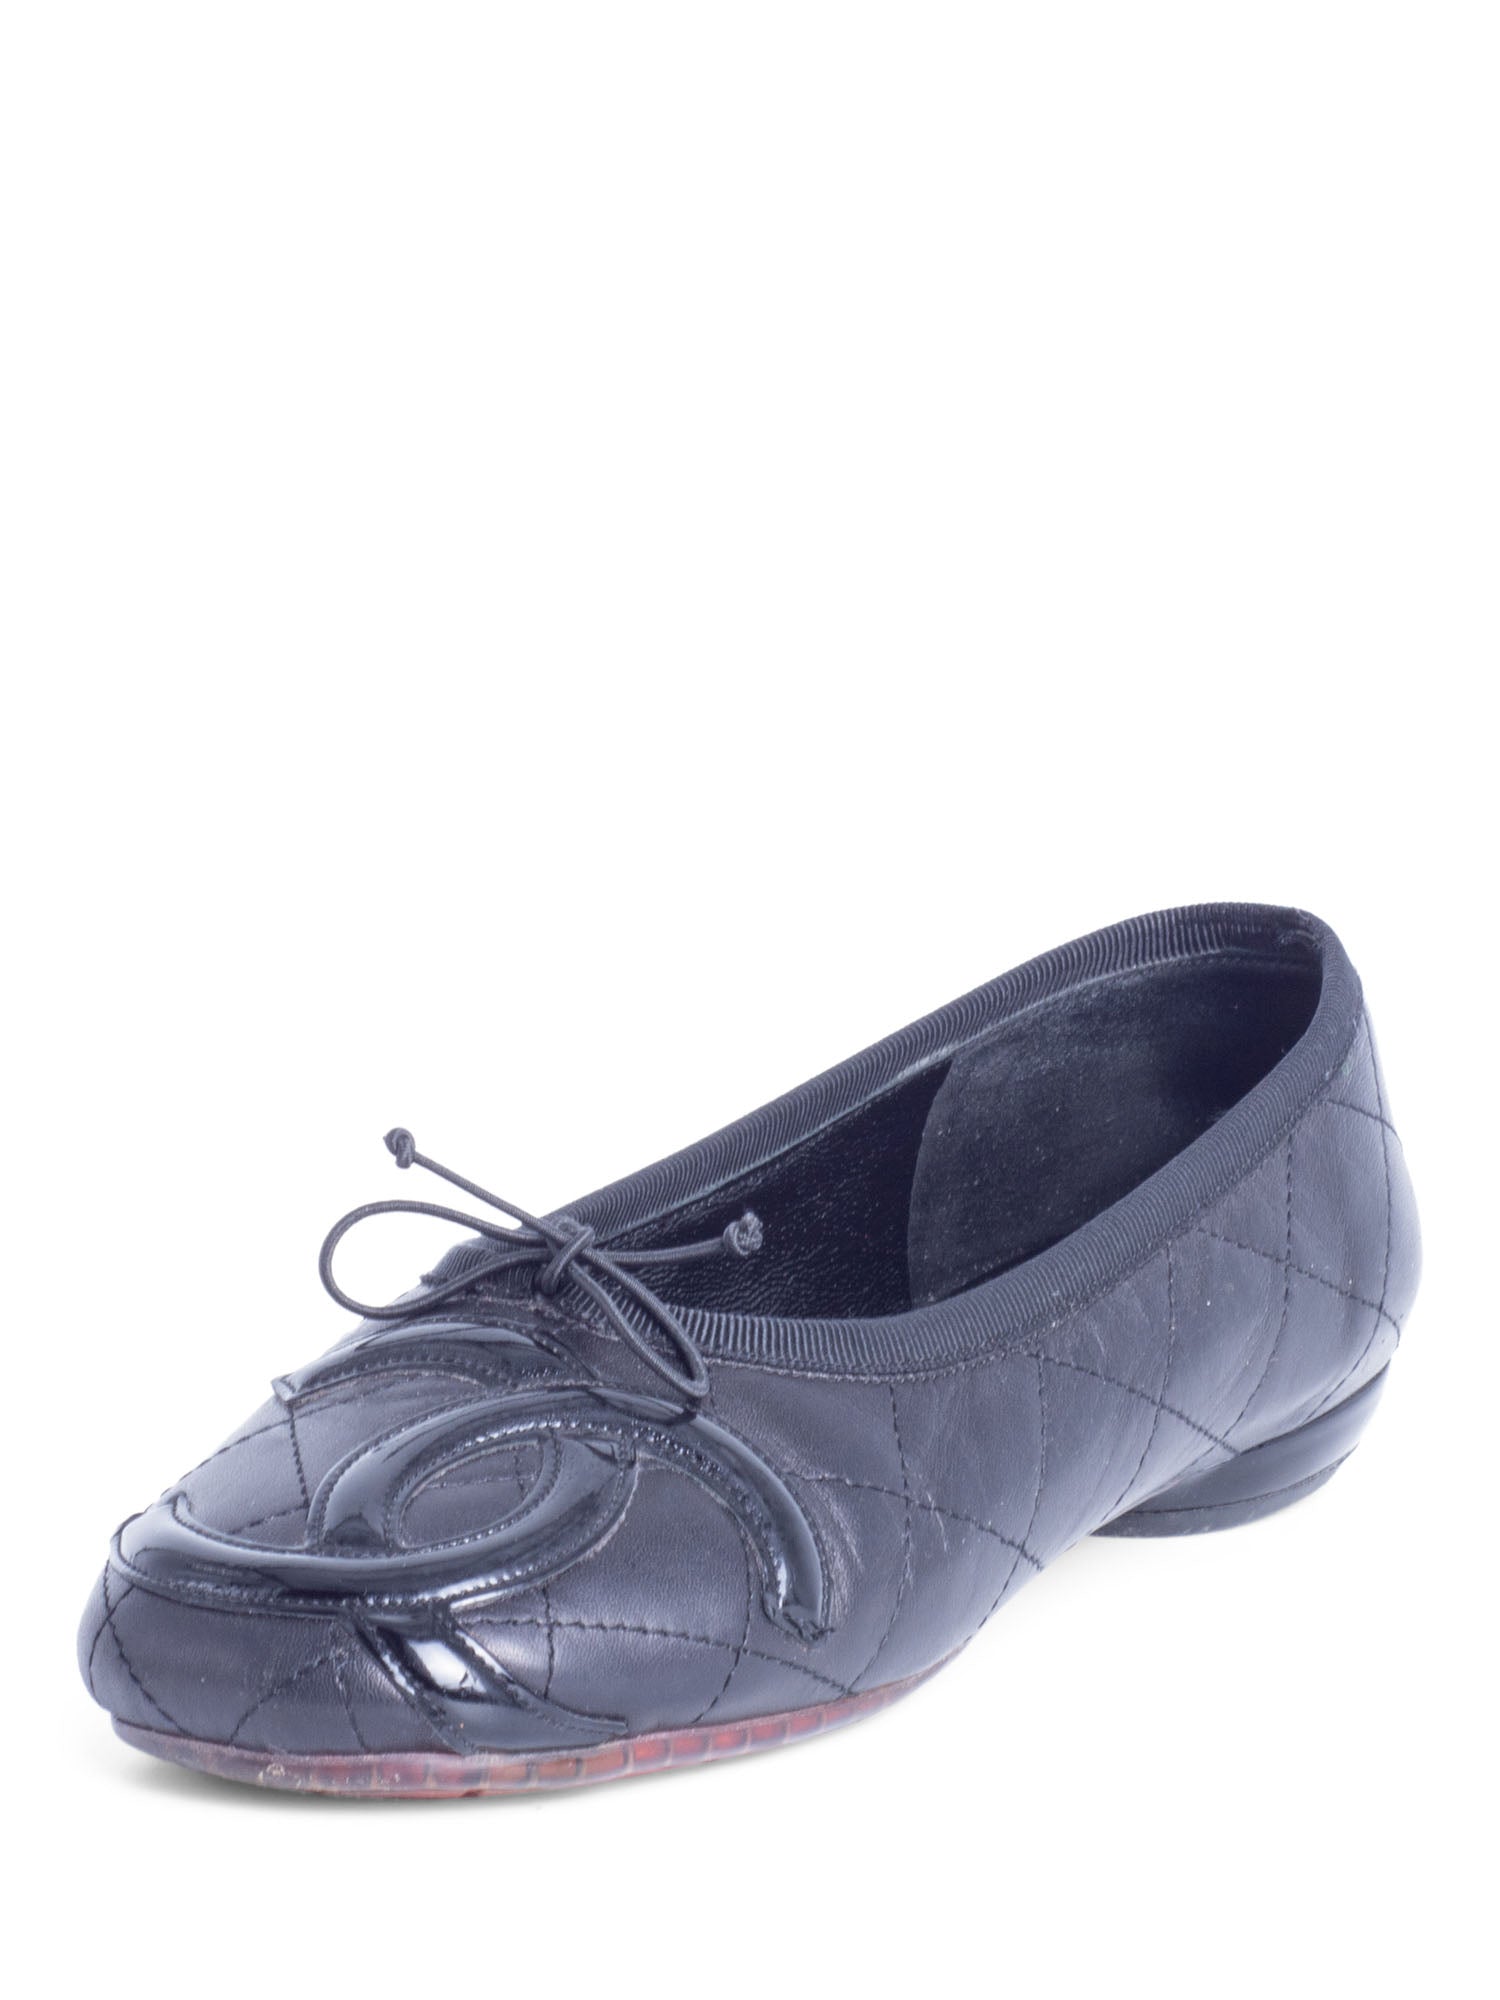 CHANEL CC Logo Quilted Leather Ballet Flats Black-designer resale